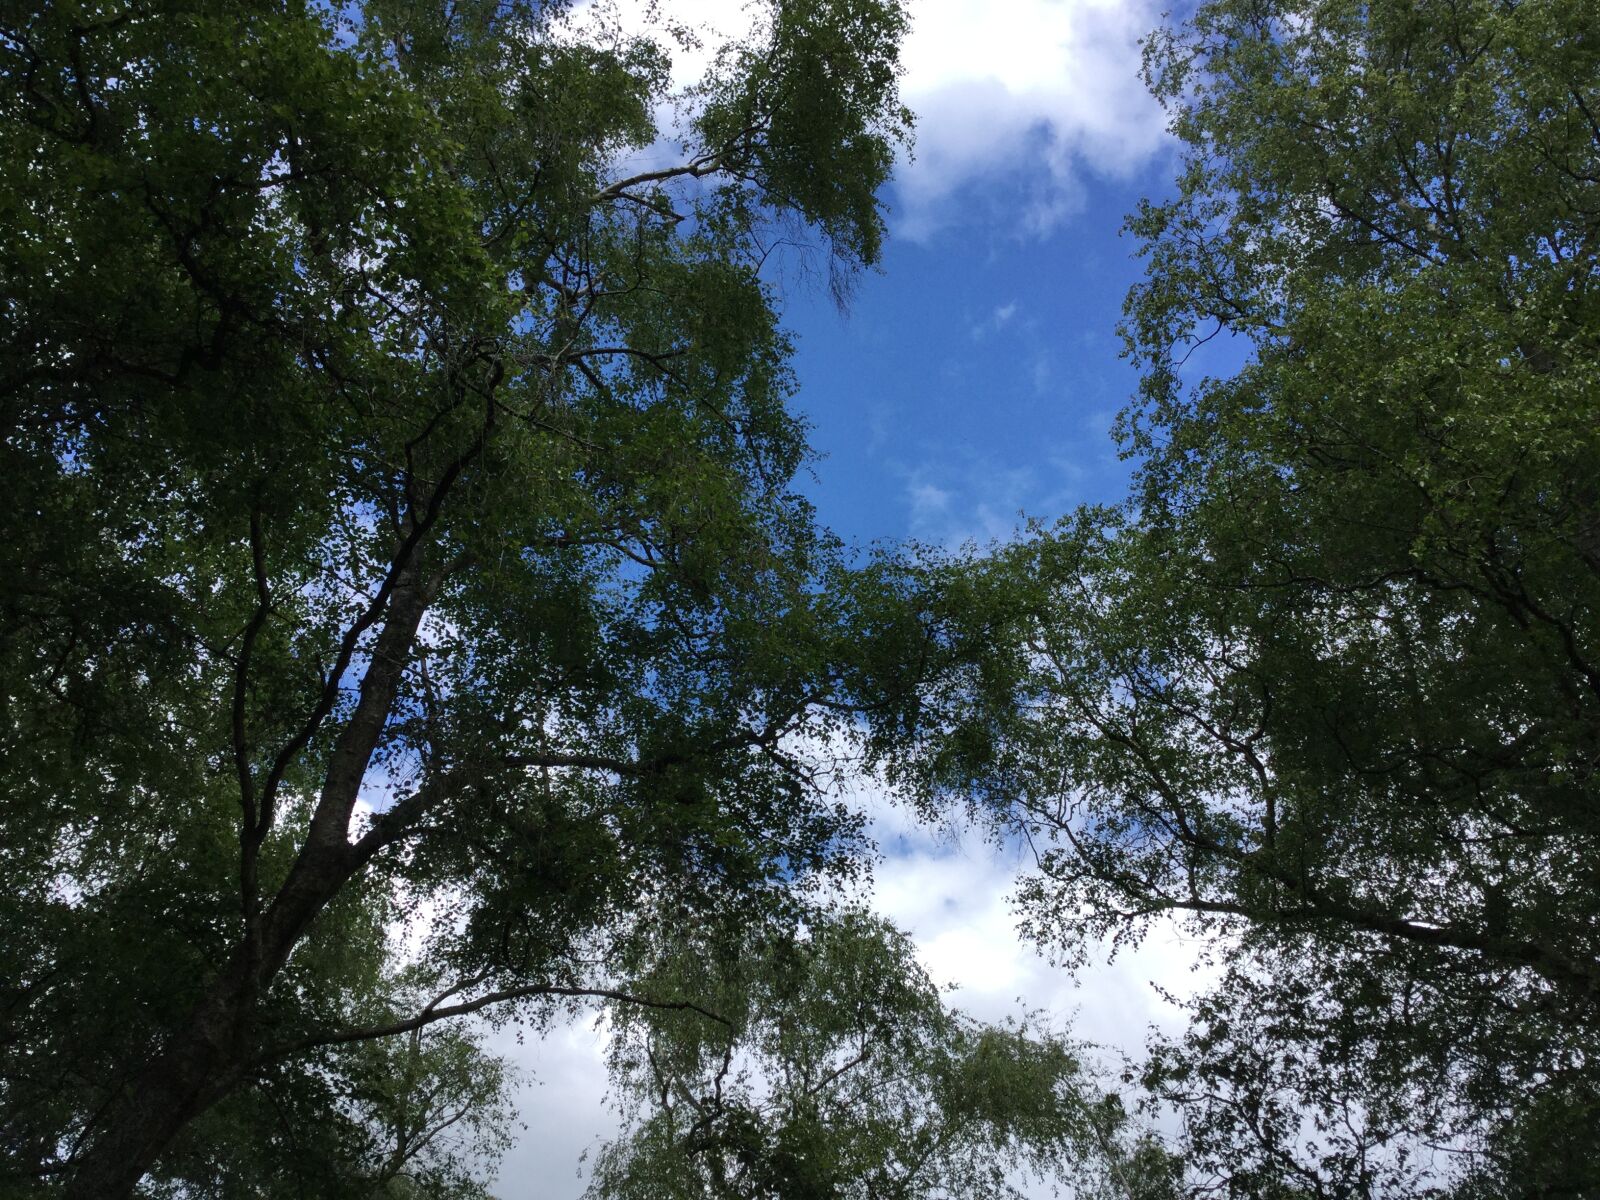 iPad Air 2 back camera 3.3mm f/2.4 sample photo. Sky, canopy, trees photography